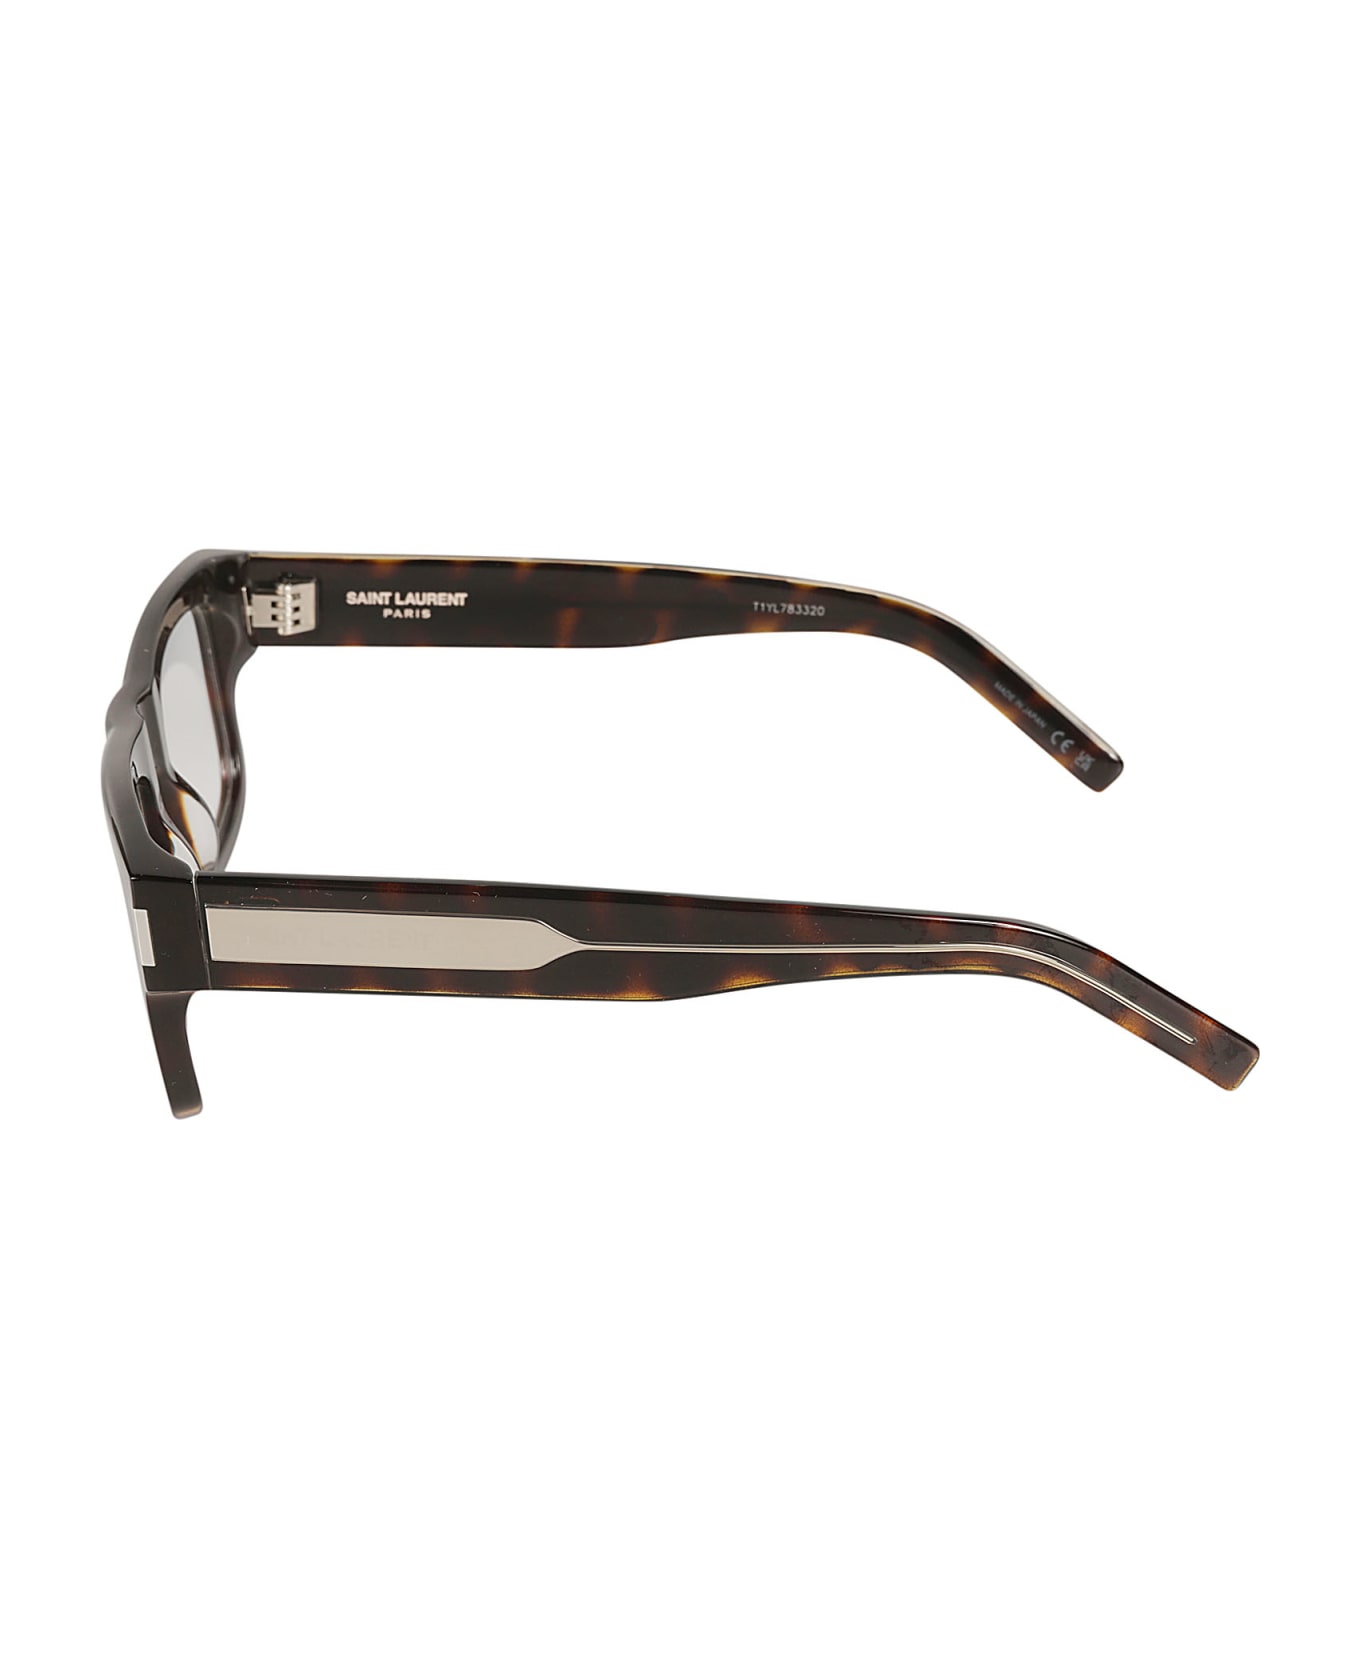 Saint Laurent Eyewear Square Frame Flame Effect Glasses - Havana/Crystal/Transparent